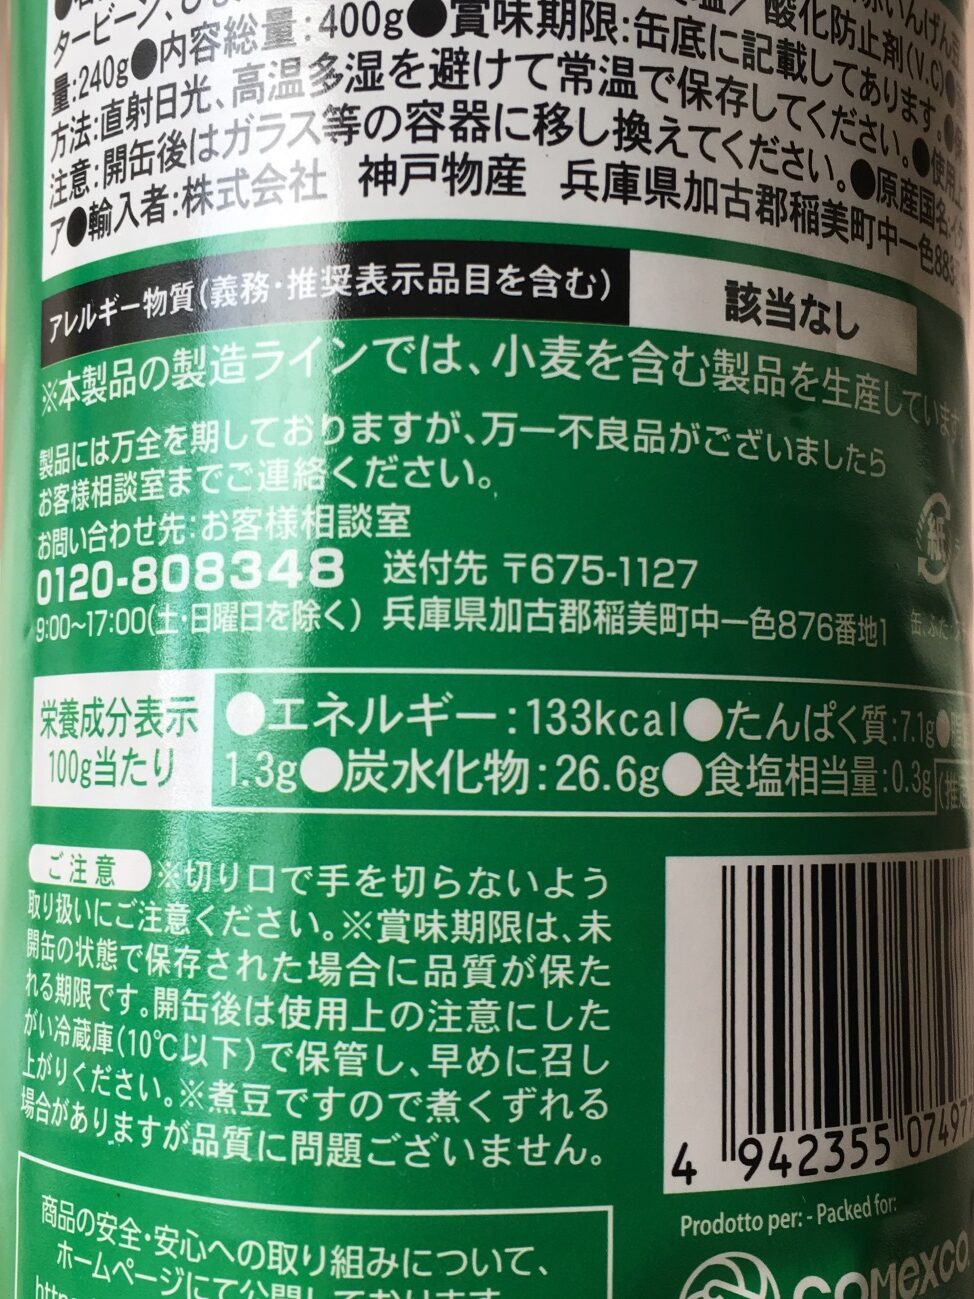 業務スーパーのミックスビーンズ缶詰の栄養成分表示